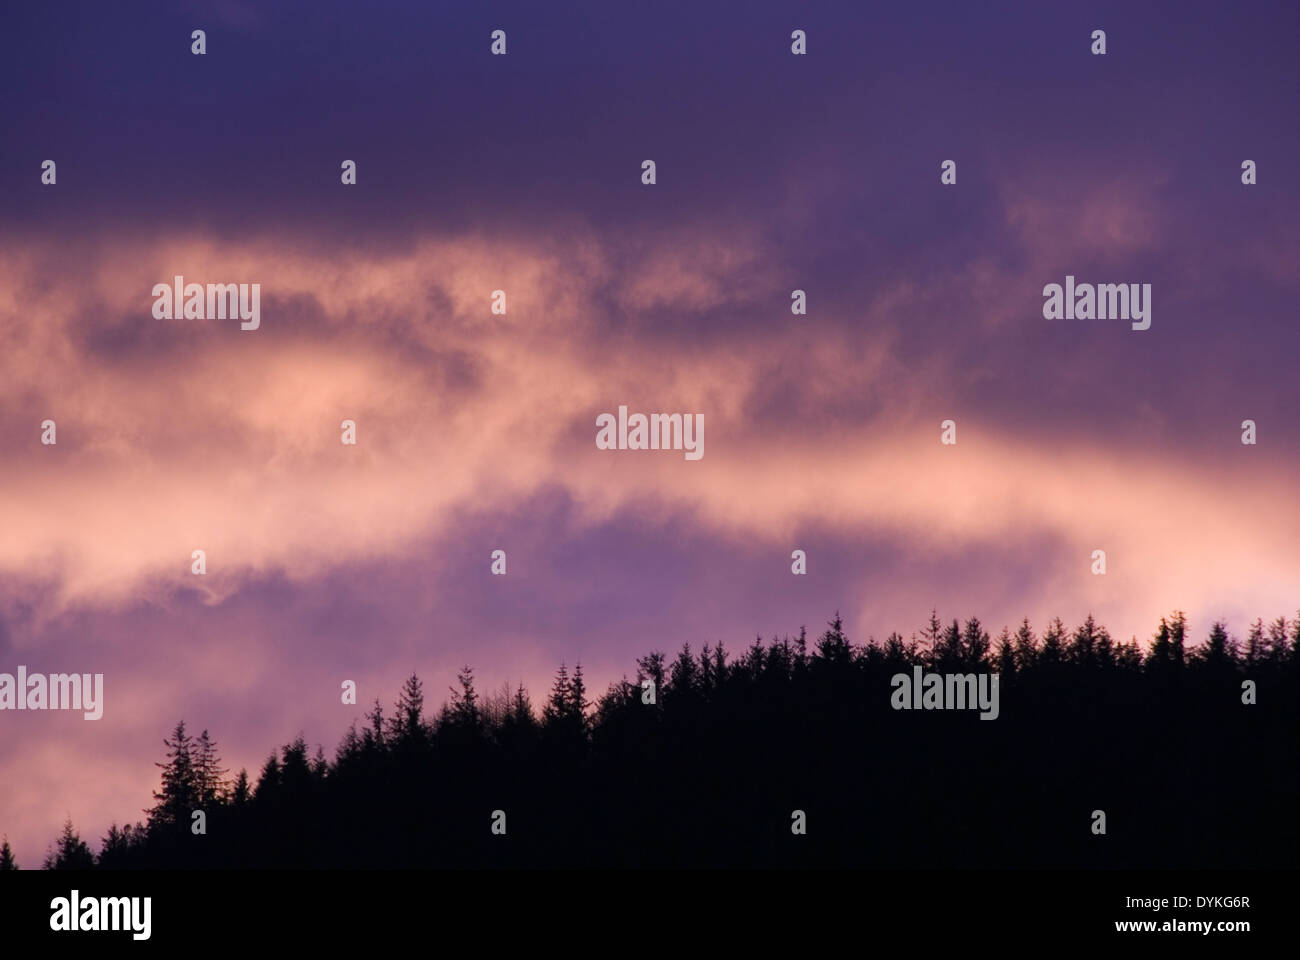 Alba nuvola skyscape dietro silhoette di un abete collina boschiva, Snowdonia, Wales, Regno Unito Foto Stock